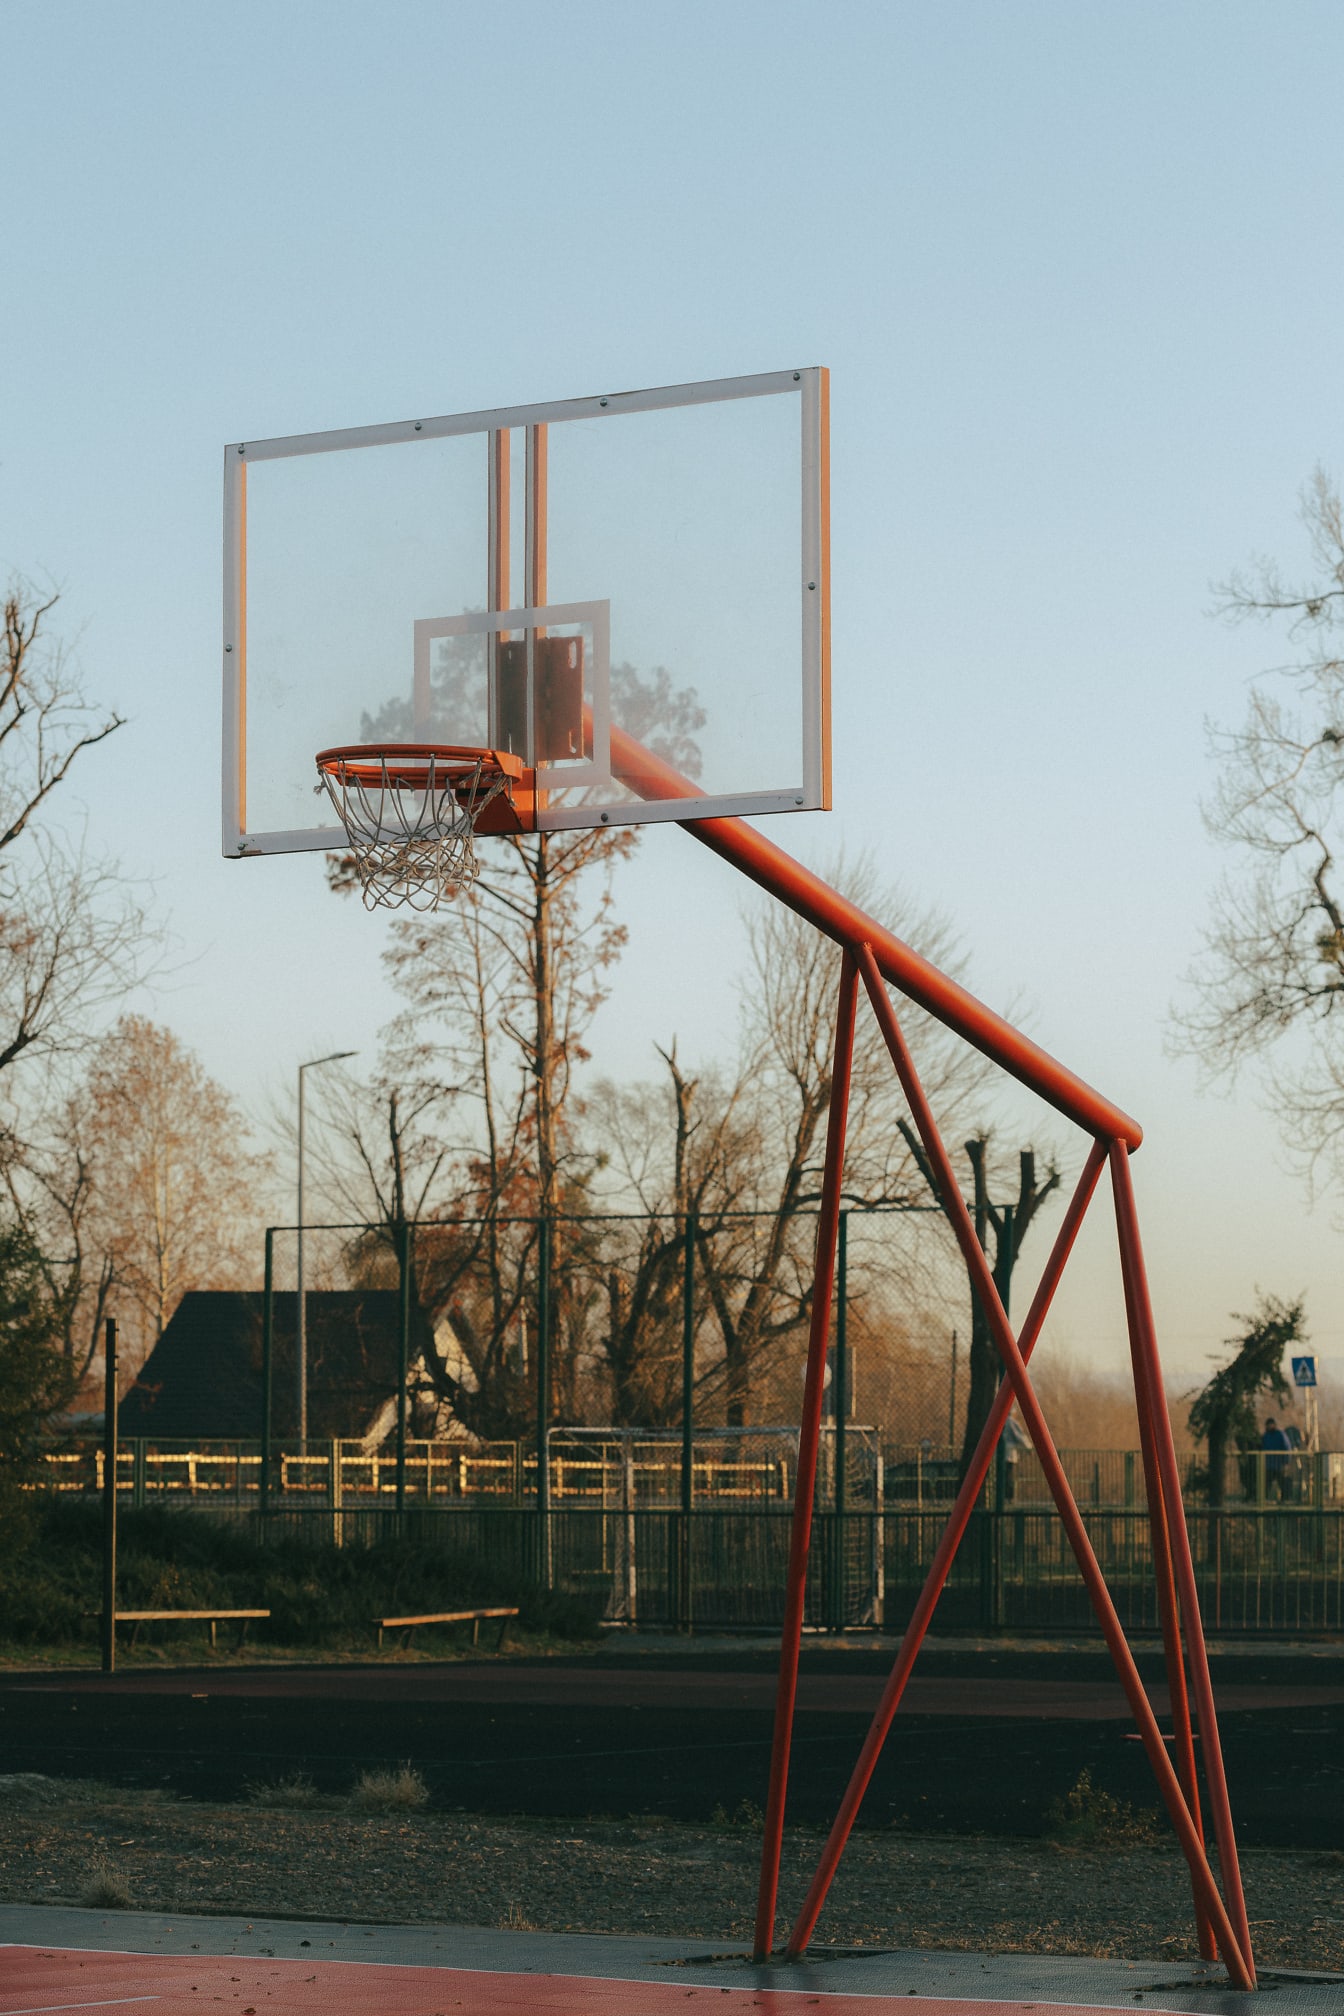 Άδειο γήπεδο μπάσκετ με καλάθι με κοκκινωπή μεταλλική κατασκευή